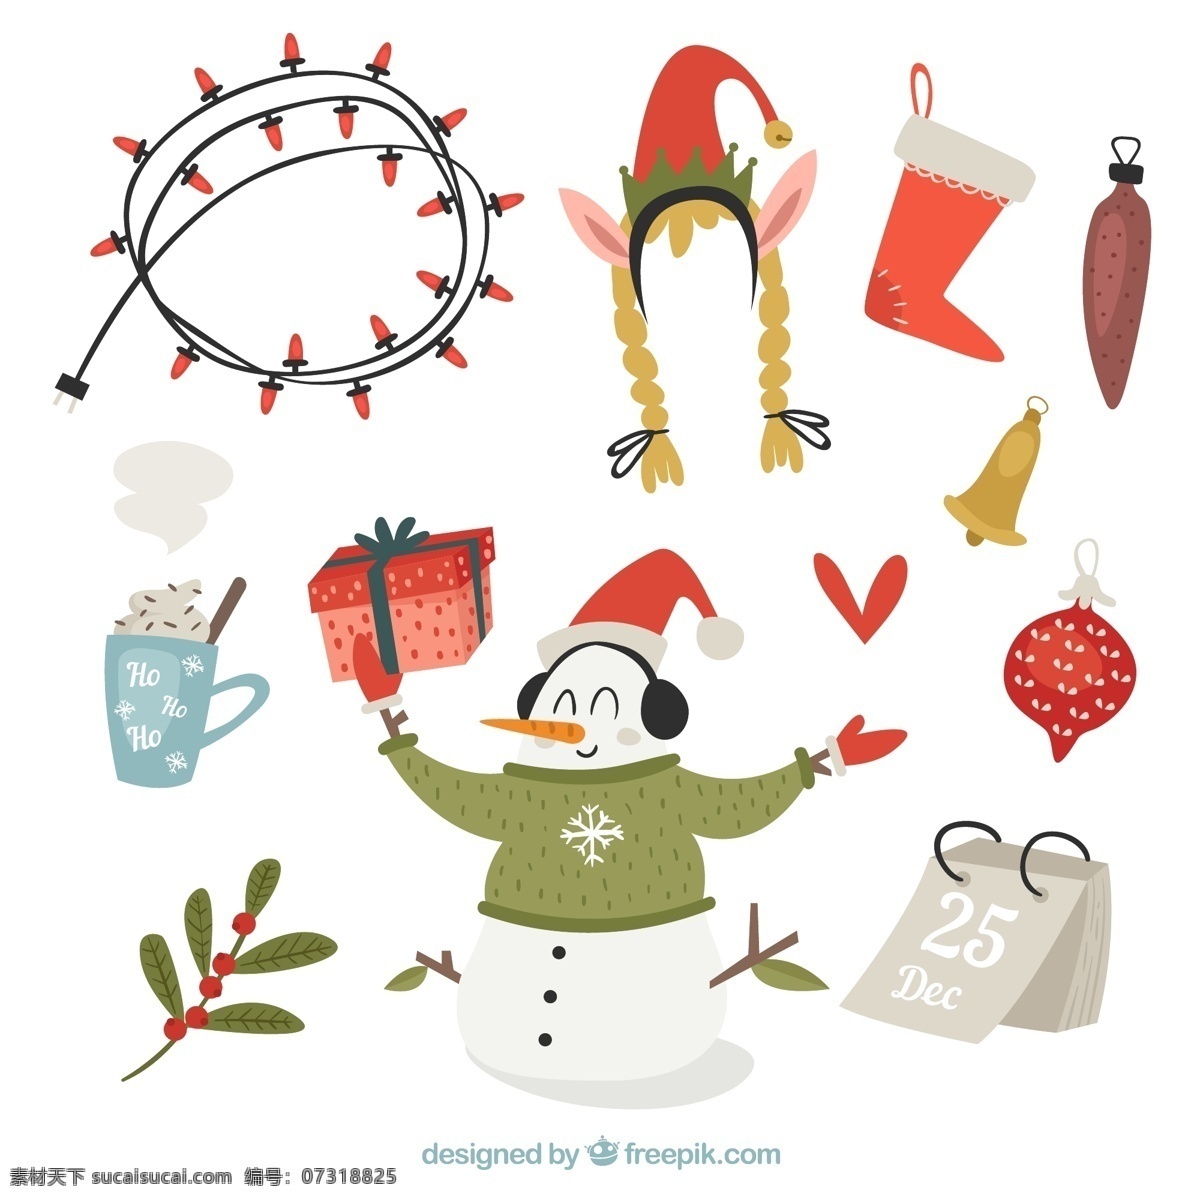 款 彩绘 圣诞 元素 矢量 彩球 彩色 节日 卡通 礼物 圣诞节 手绘 雪人 植物